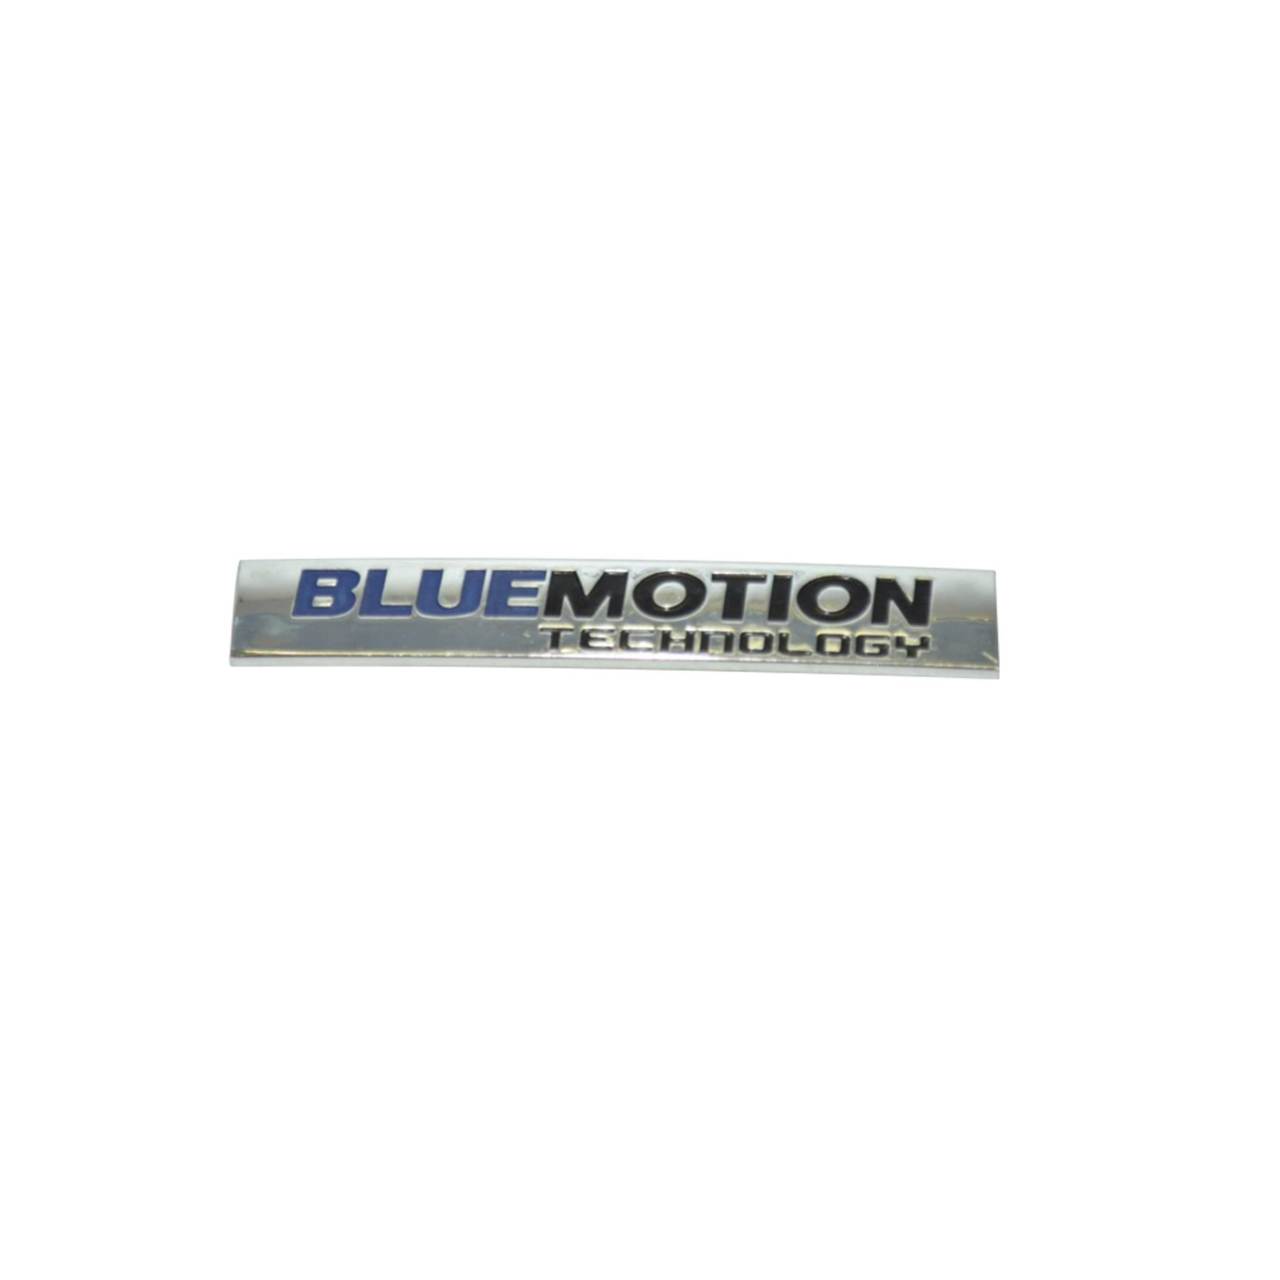 Yazı - Bluemotion Technology - Polo - 2010 - 2014